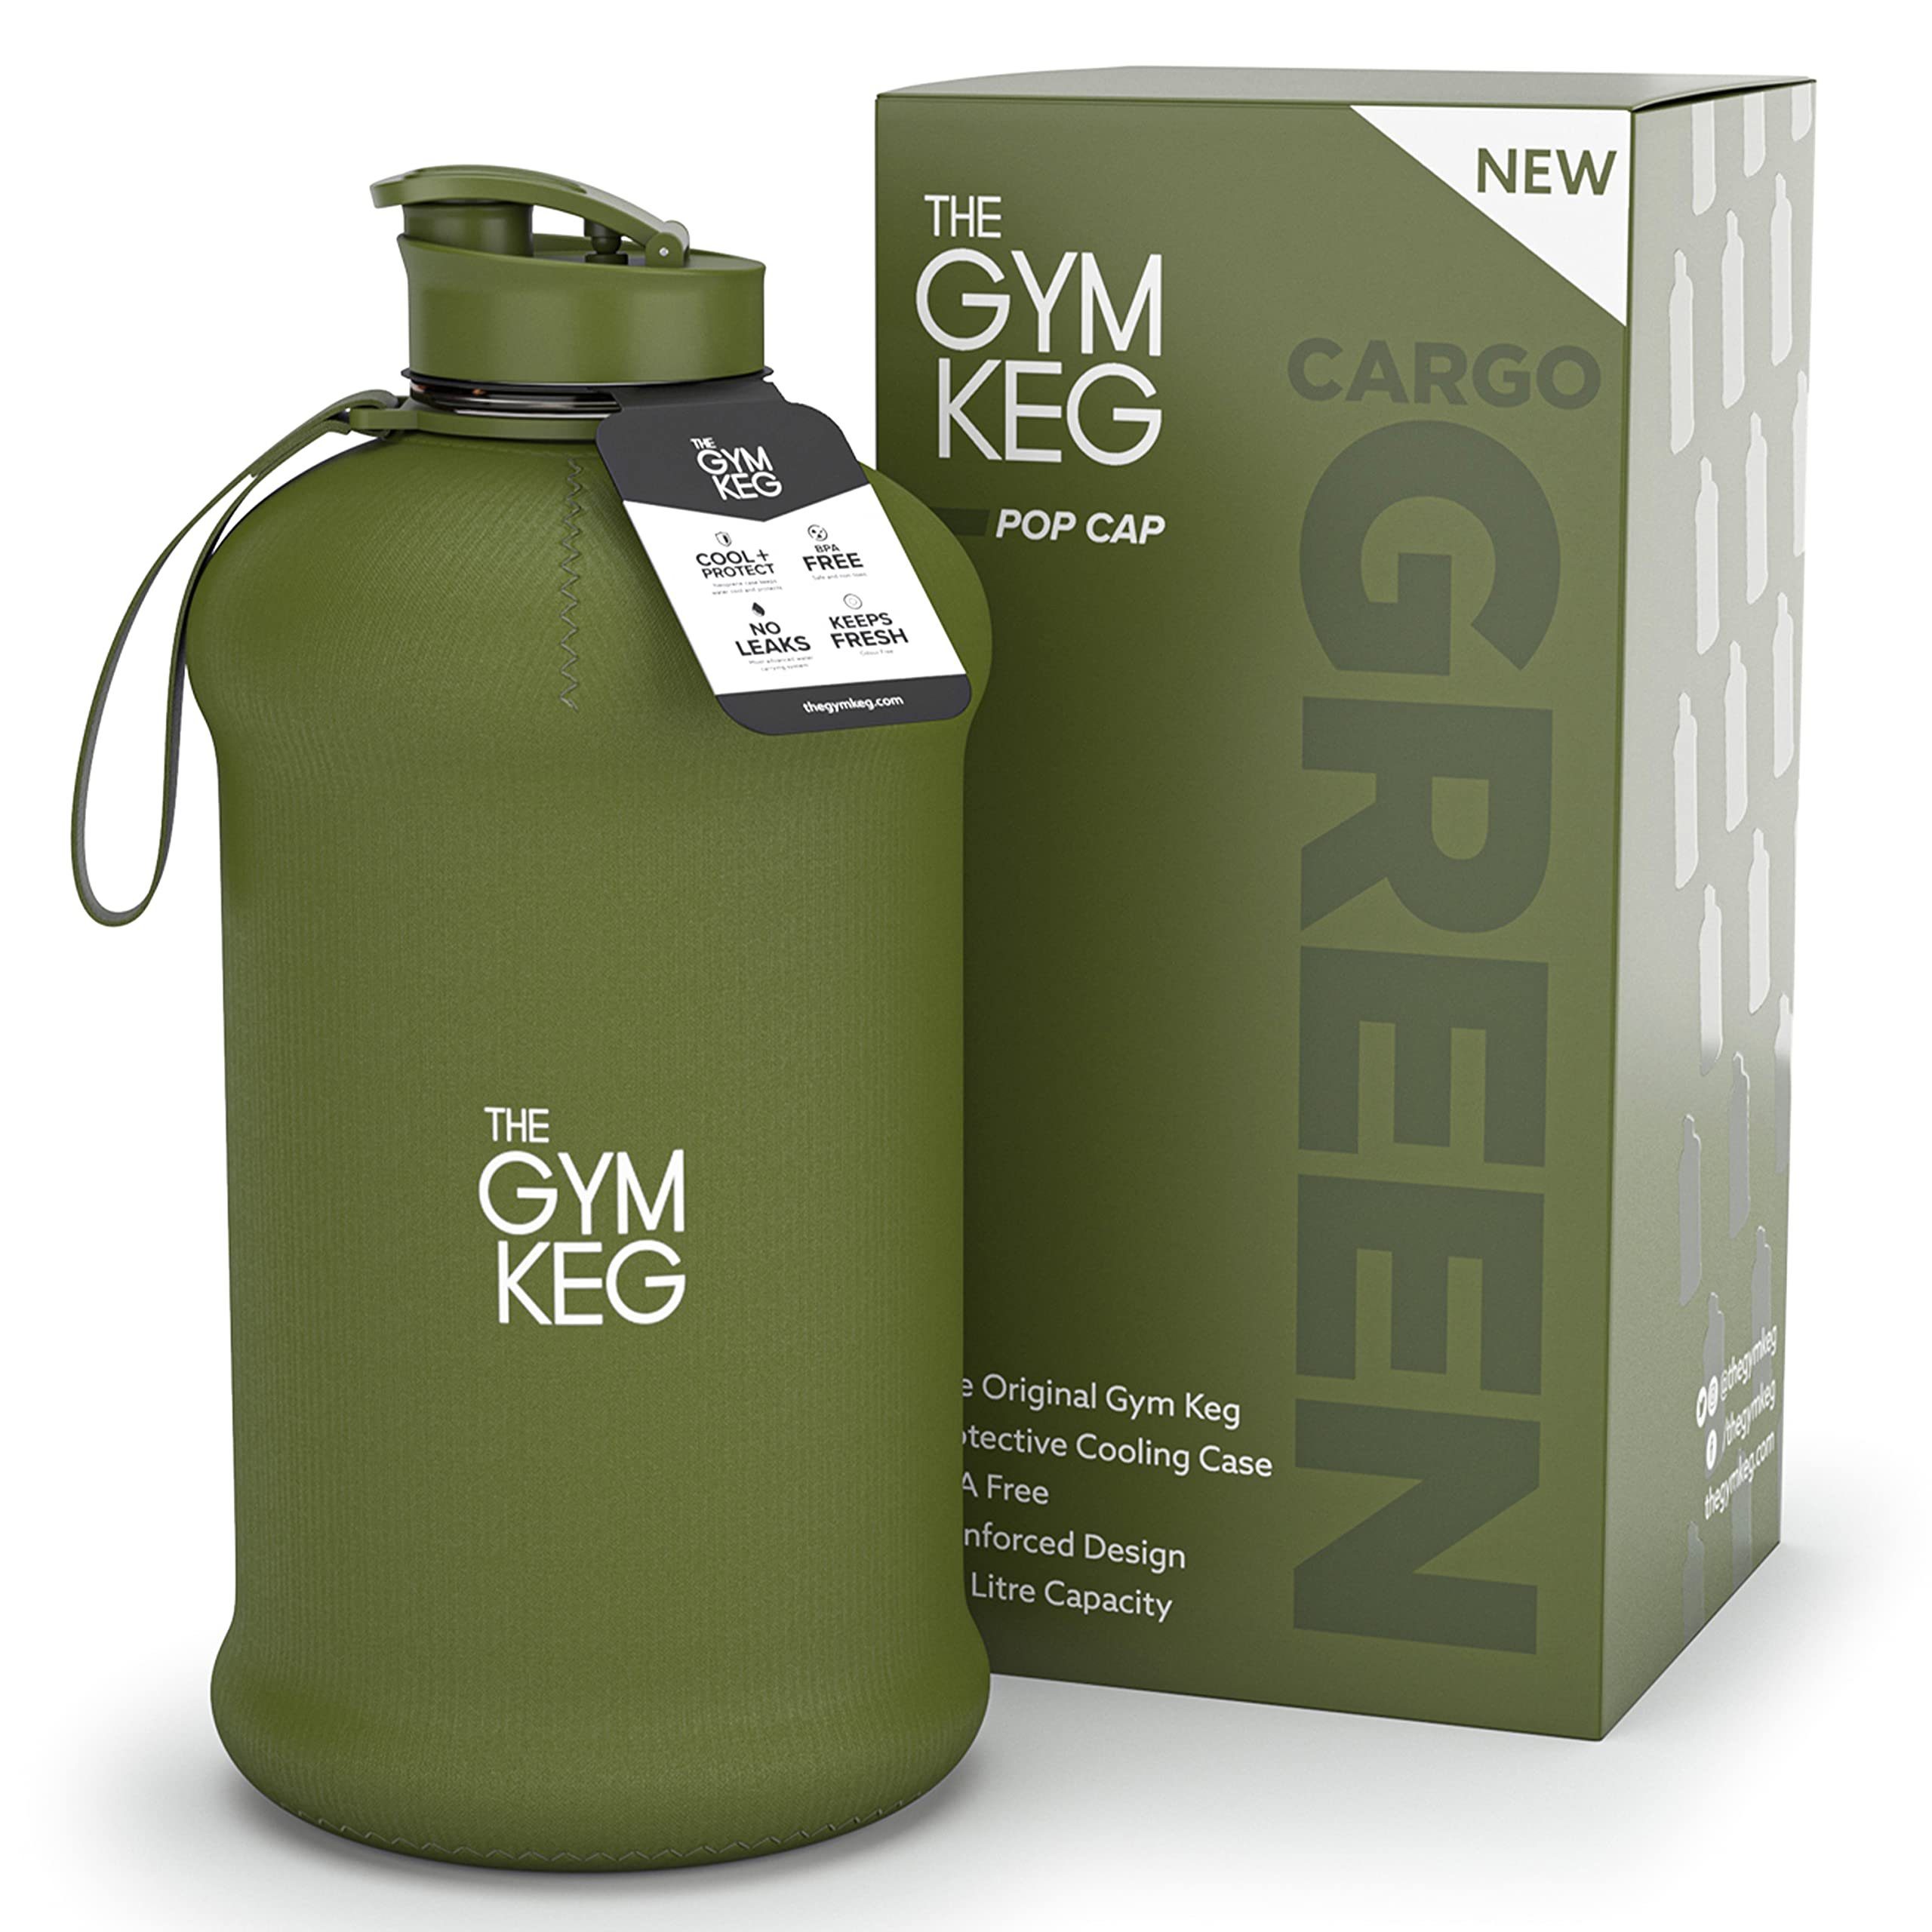 2.2 Gym Wiederverwendbar, Cargo Sleeve The Gym Griff, Trinkflasche 2.2L und Trinkflasche Liter Neoprene Green Keg mit